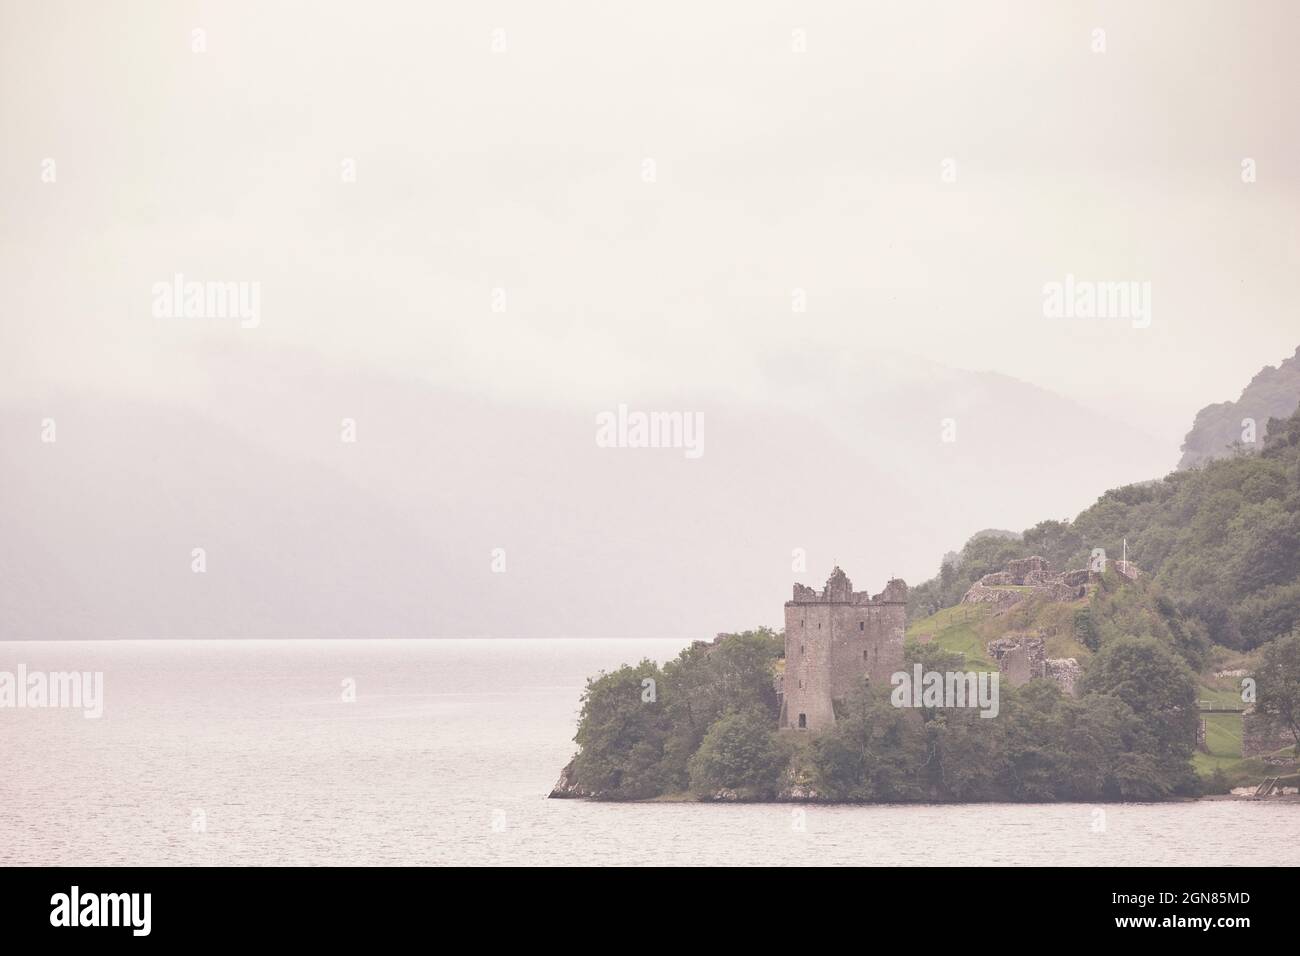 Adoro questo punto panoramico che si affaccia sul castello di Urquhart e sulla baia di Loch Ness, in particolare nei giorni in cui il tempo non è 'buono' come si fa sempre più Foto Stock